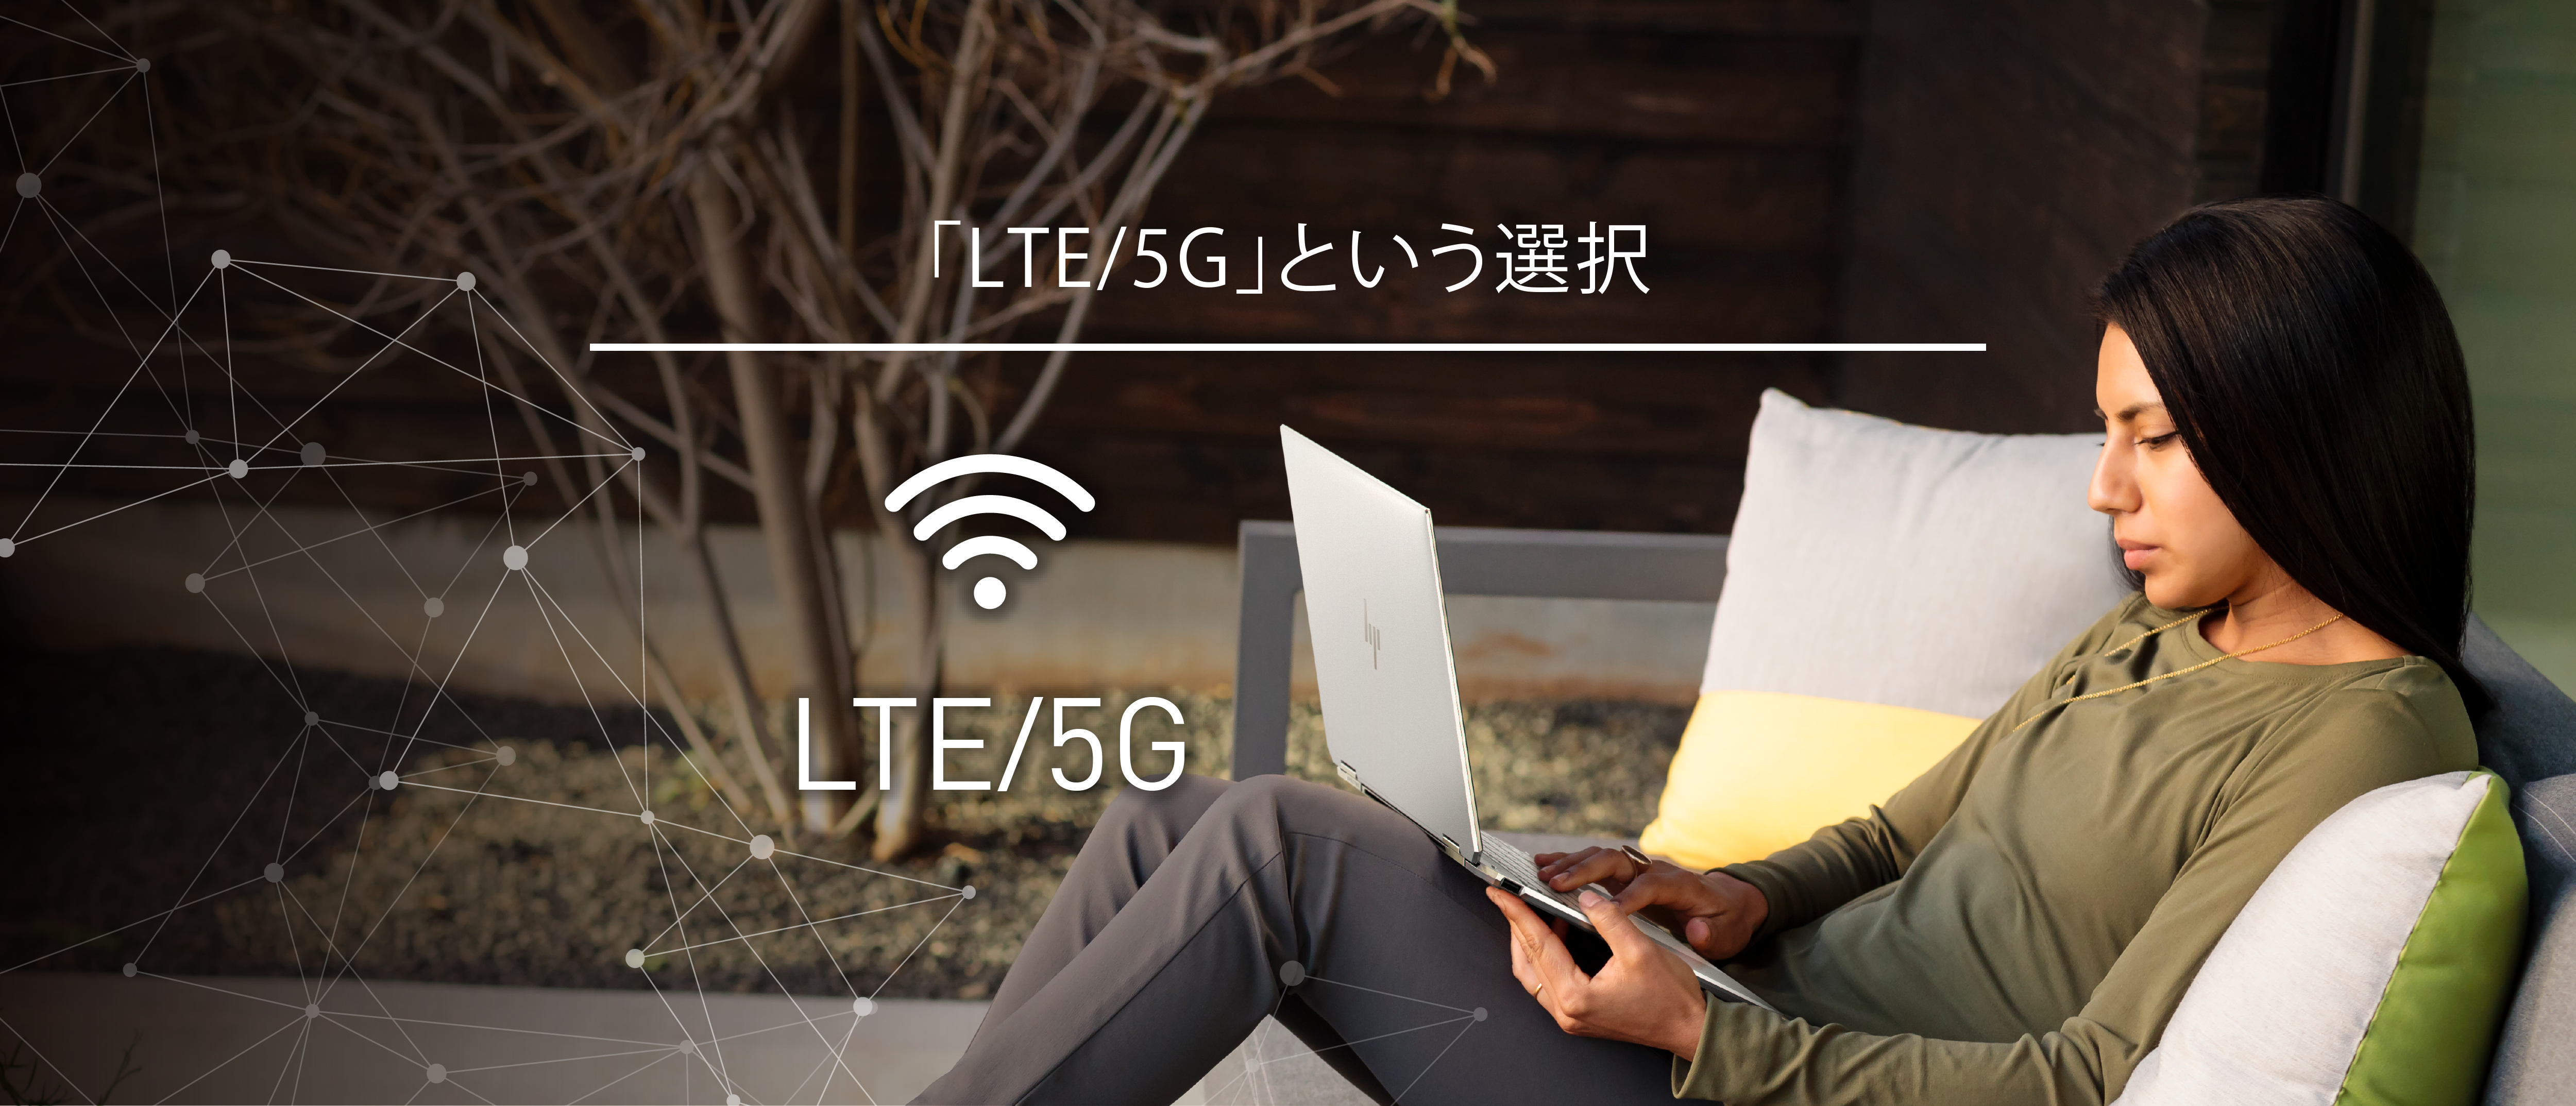 「LTE/5G」という選択